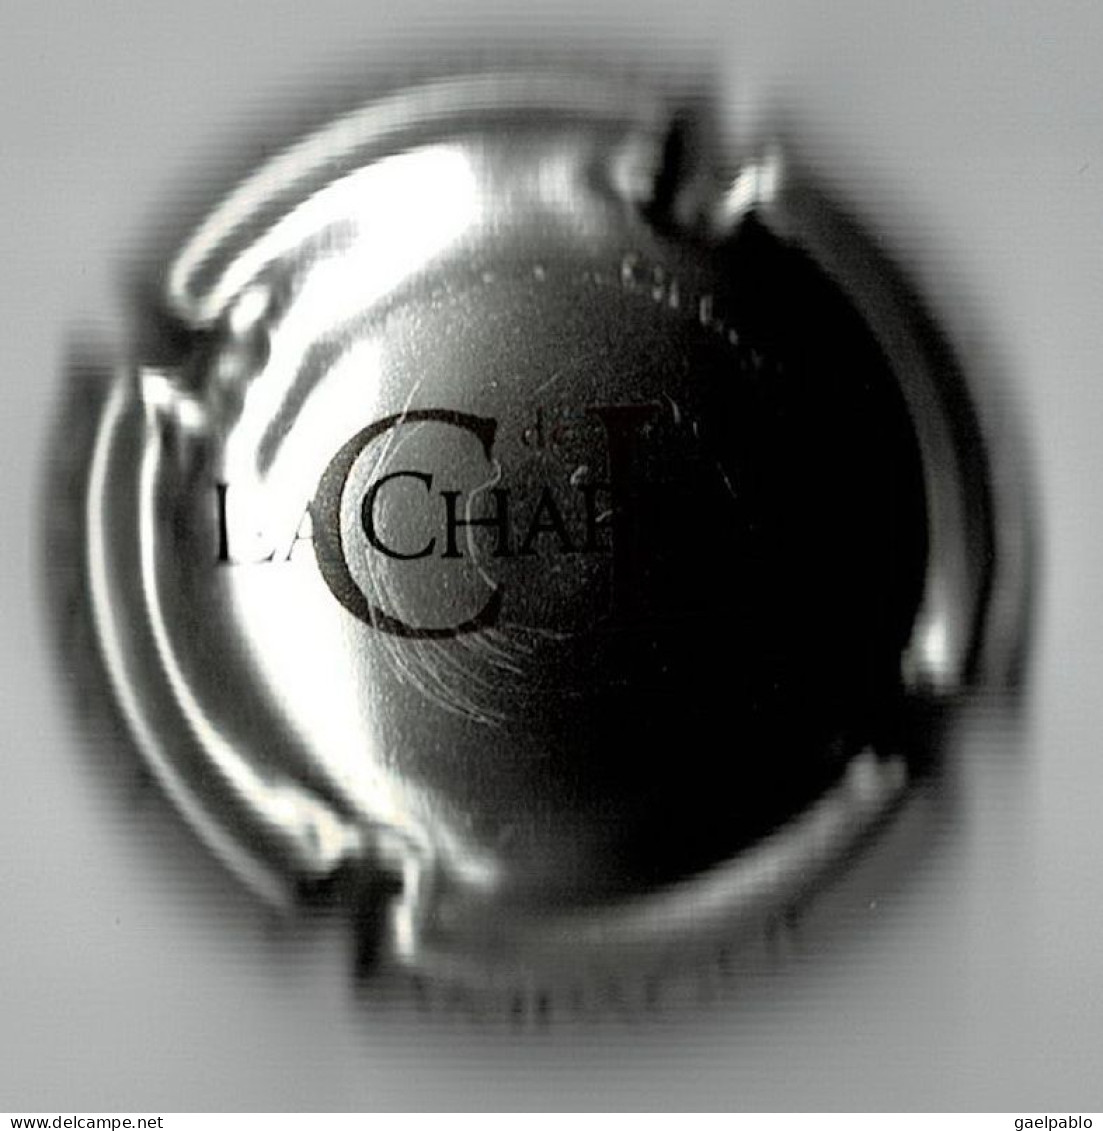 CL. DE LA CHAPELLE  N° 25  Lambert - Tome 1  81/27  Métal  INSTINCT - Clos De La Chapelle